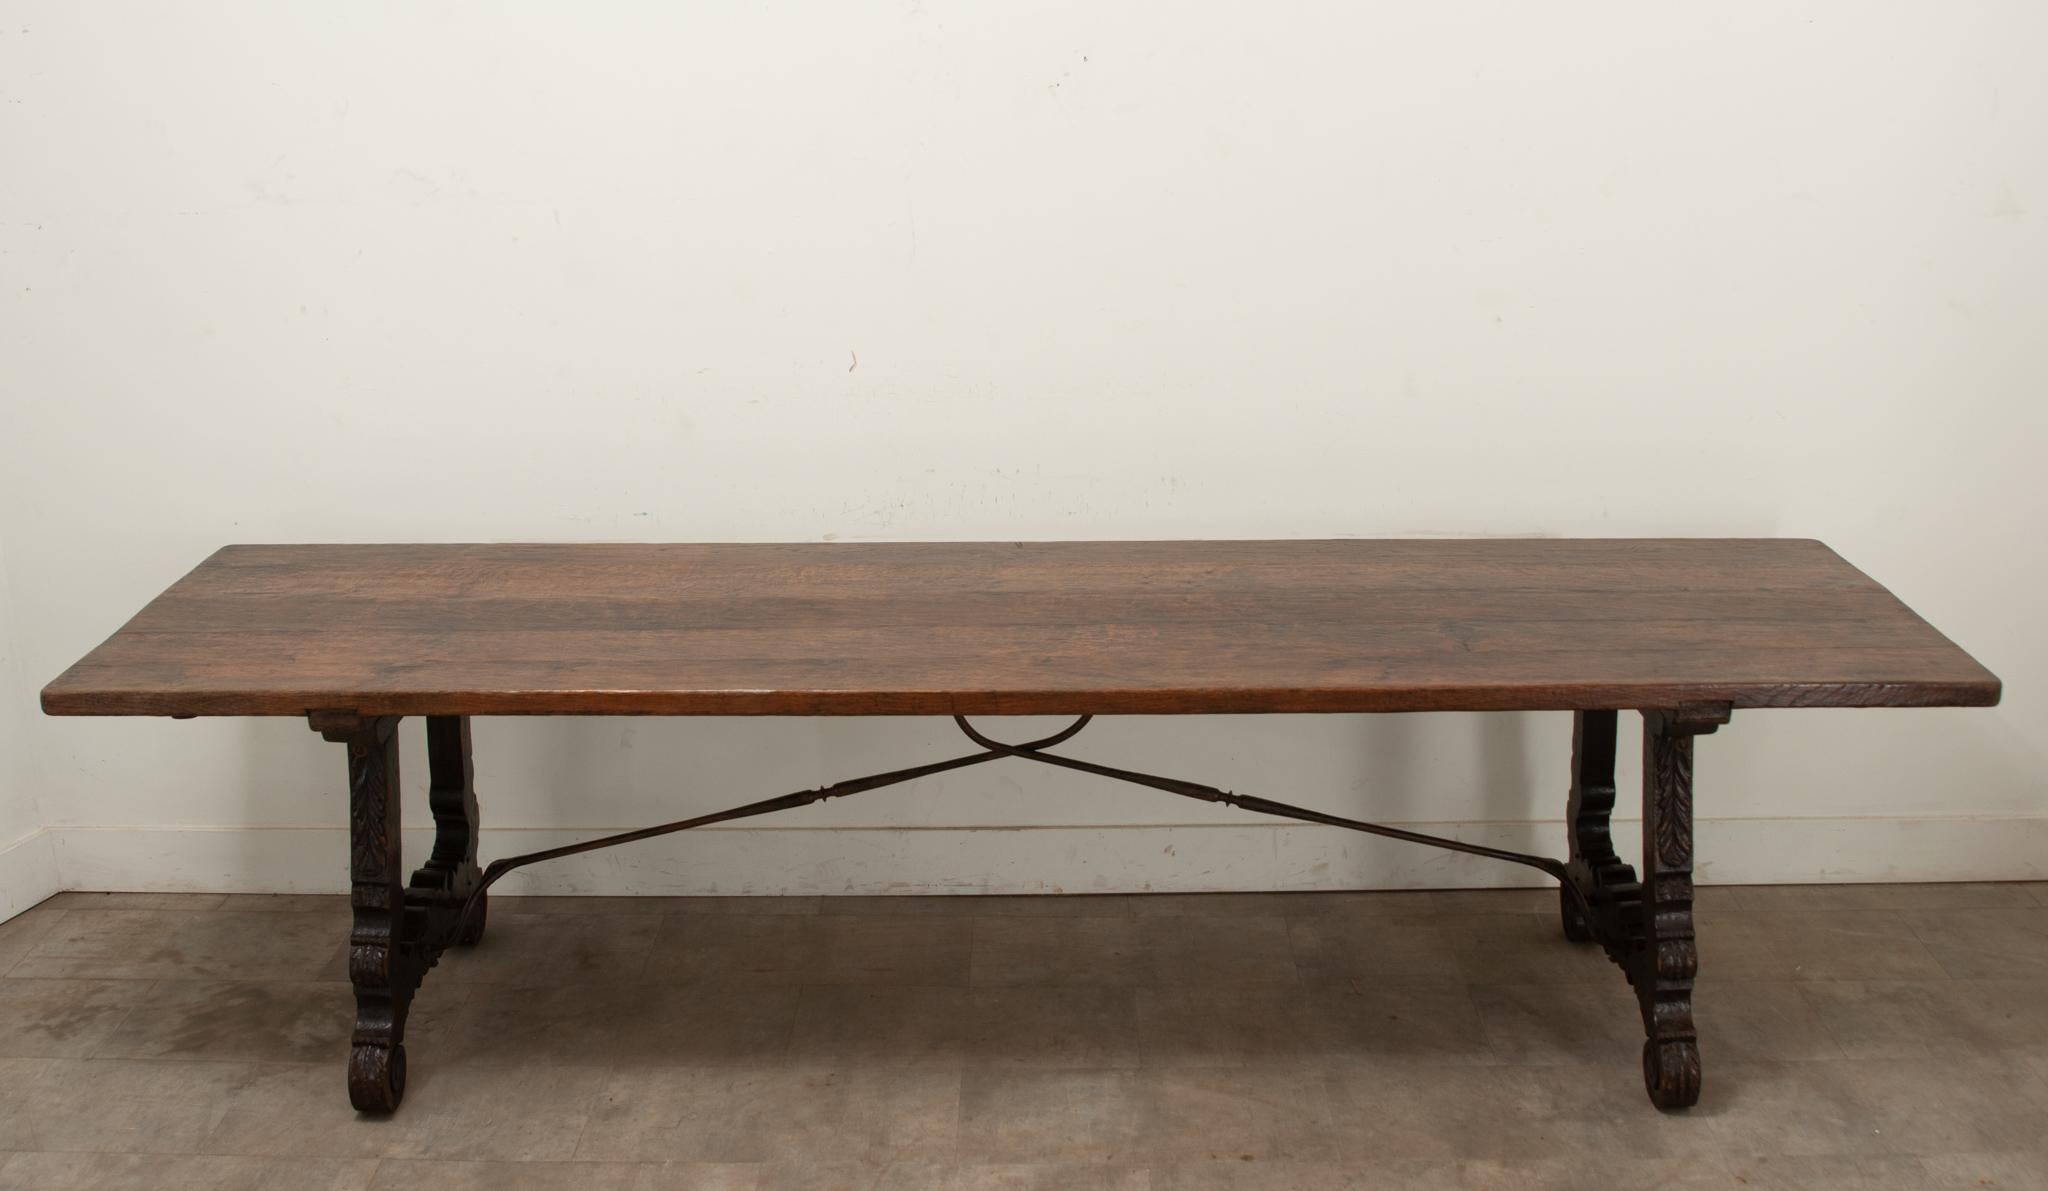 Ein großer spanischer Esstisch aus Eiche ist über zwölf Fuß lang. Dieser Tisch hat eine einfache Bohlenplatte über geschnitzten Zierbeinen, die durch eine handgeschmiedete Eisenstütze verbunden sind. An beiden Enden befinden sich Eisenhalterungen